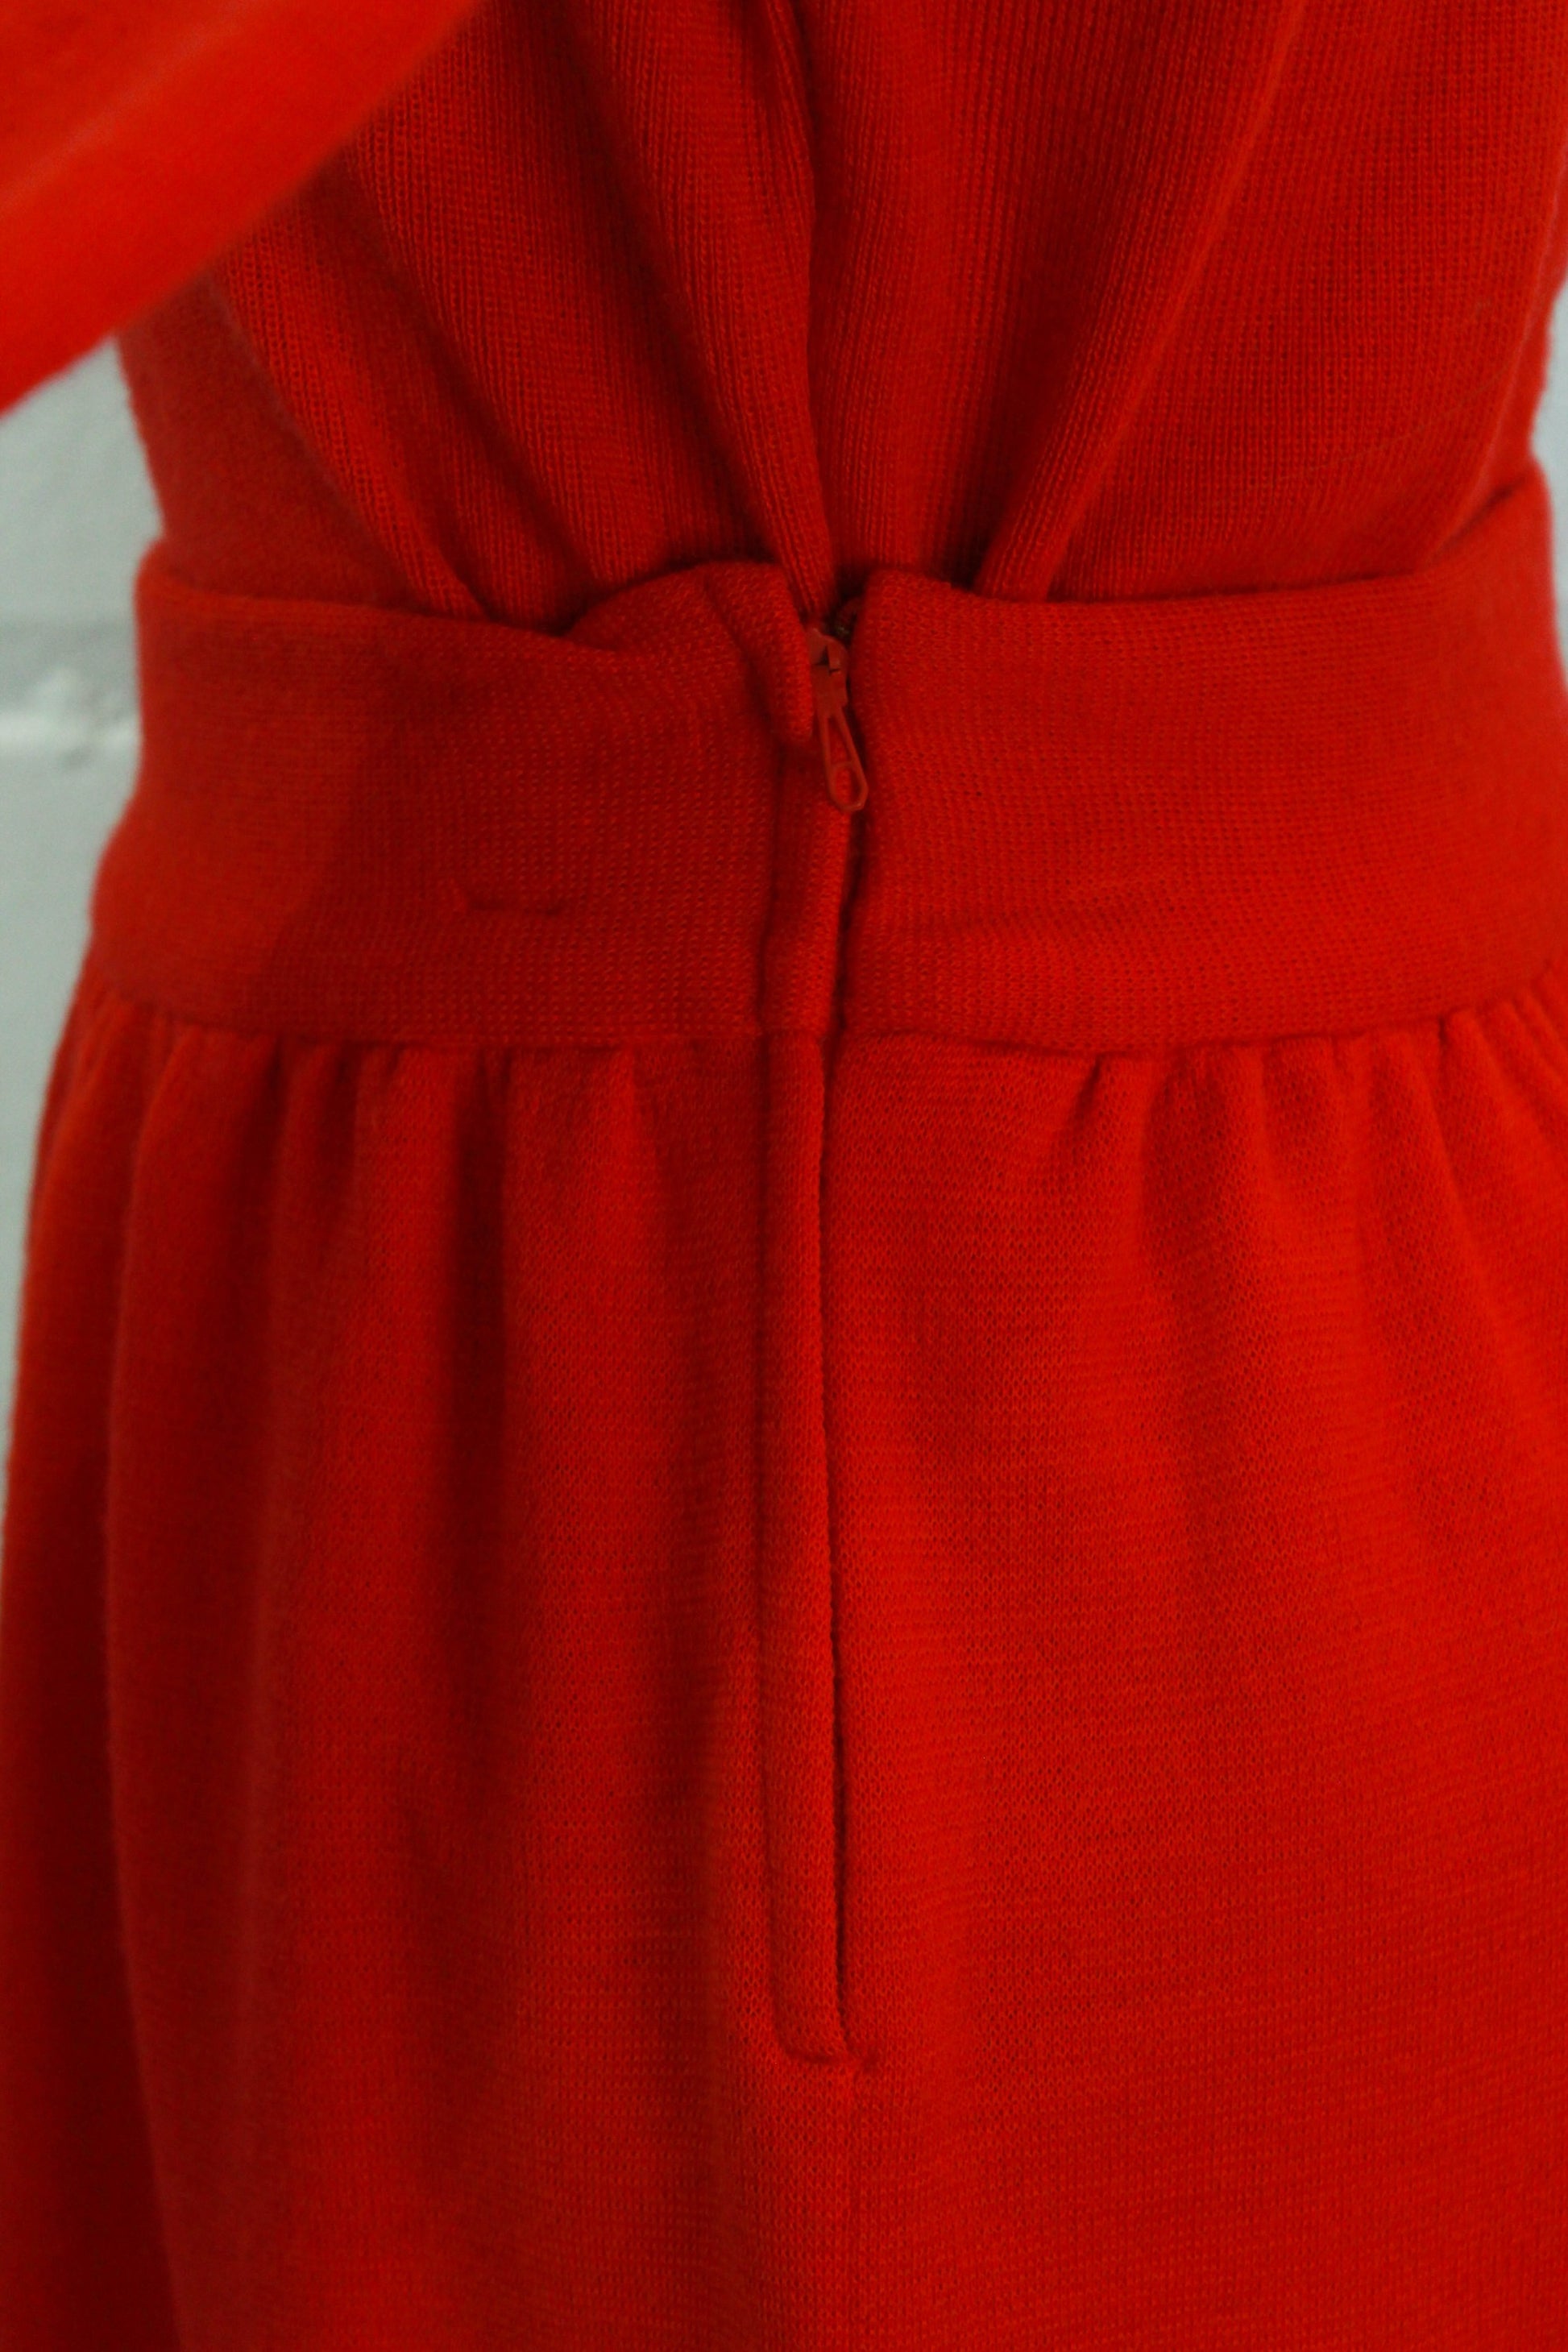 zipper close up on skirt